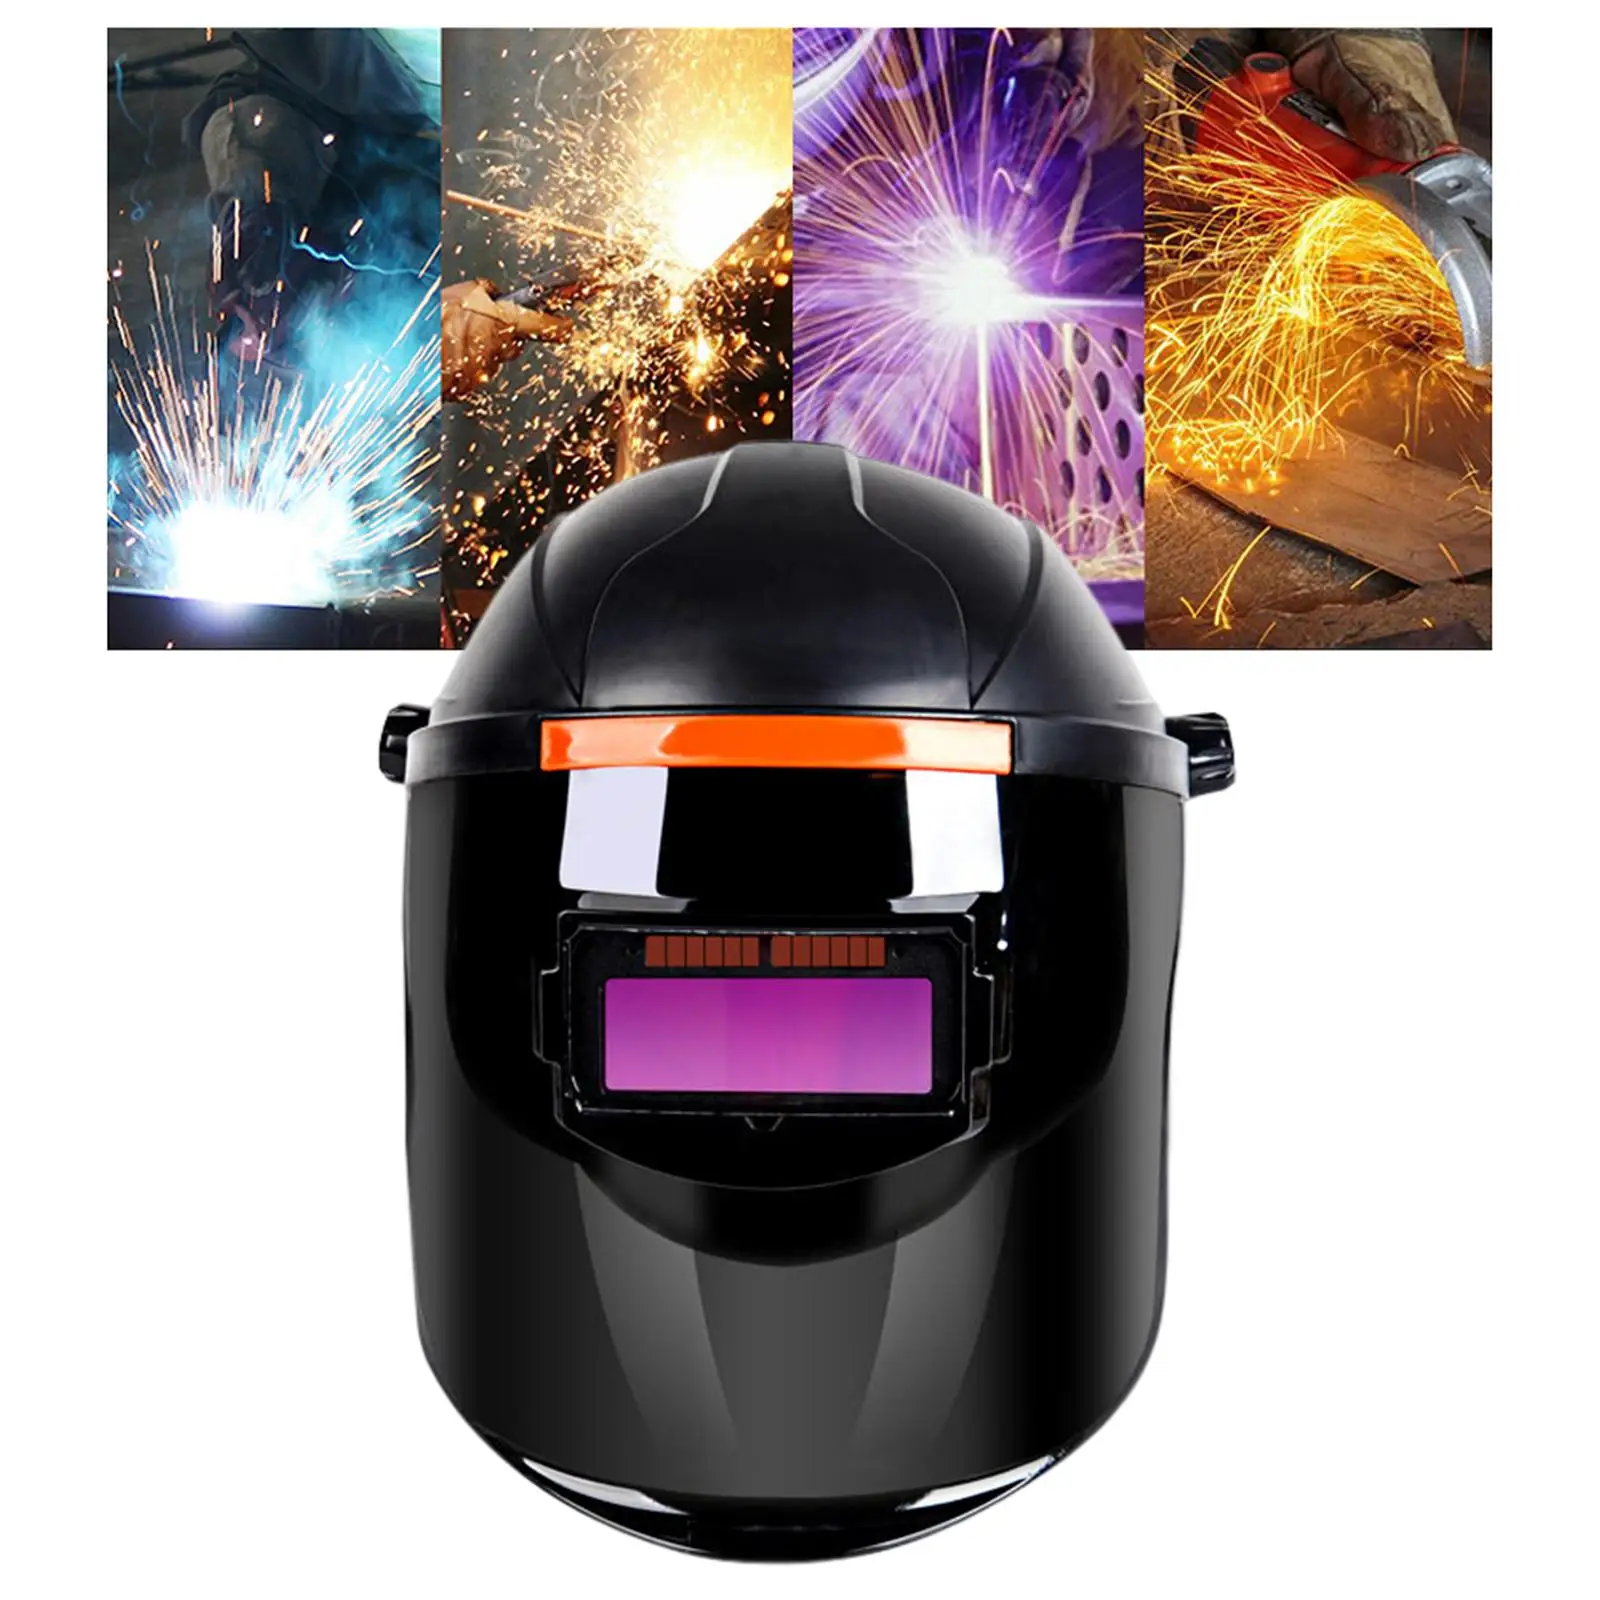 Auto Darkening Welding Helmet Welding Hood Professional Mig TIG ARC Grinding Welder Use Adjustable Head Equipment ,Black Durable